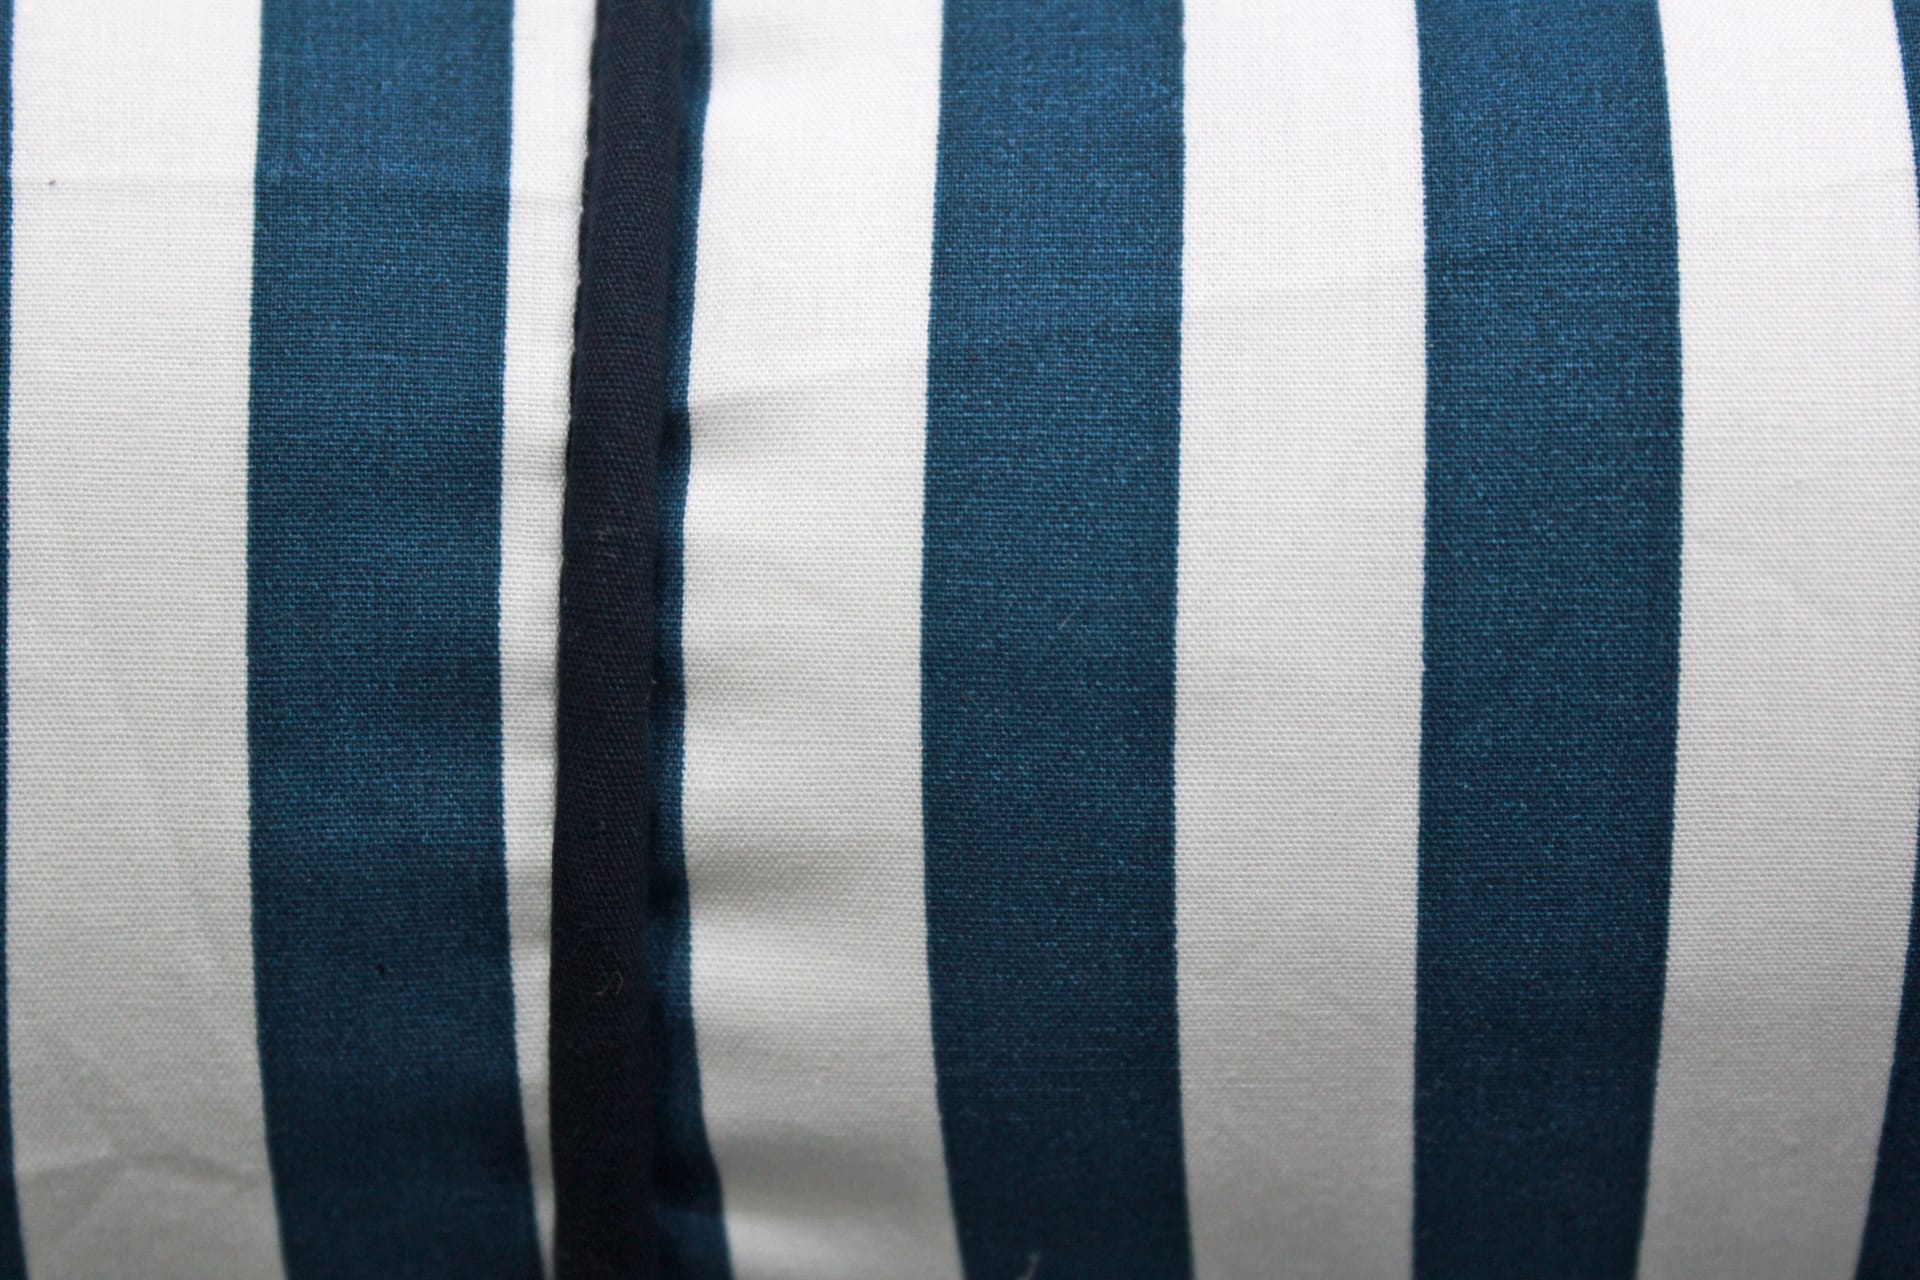 MELANGE 100% Cotton Baby Bolster Cover (with Bolster Insert), Blue